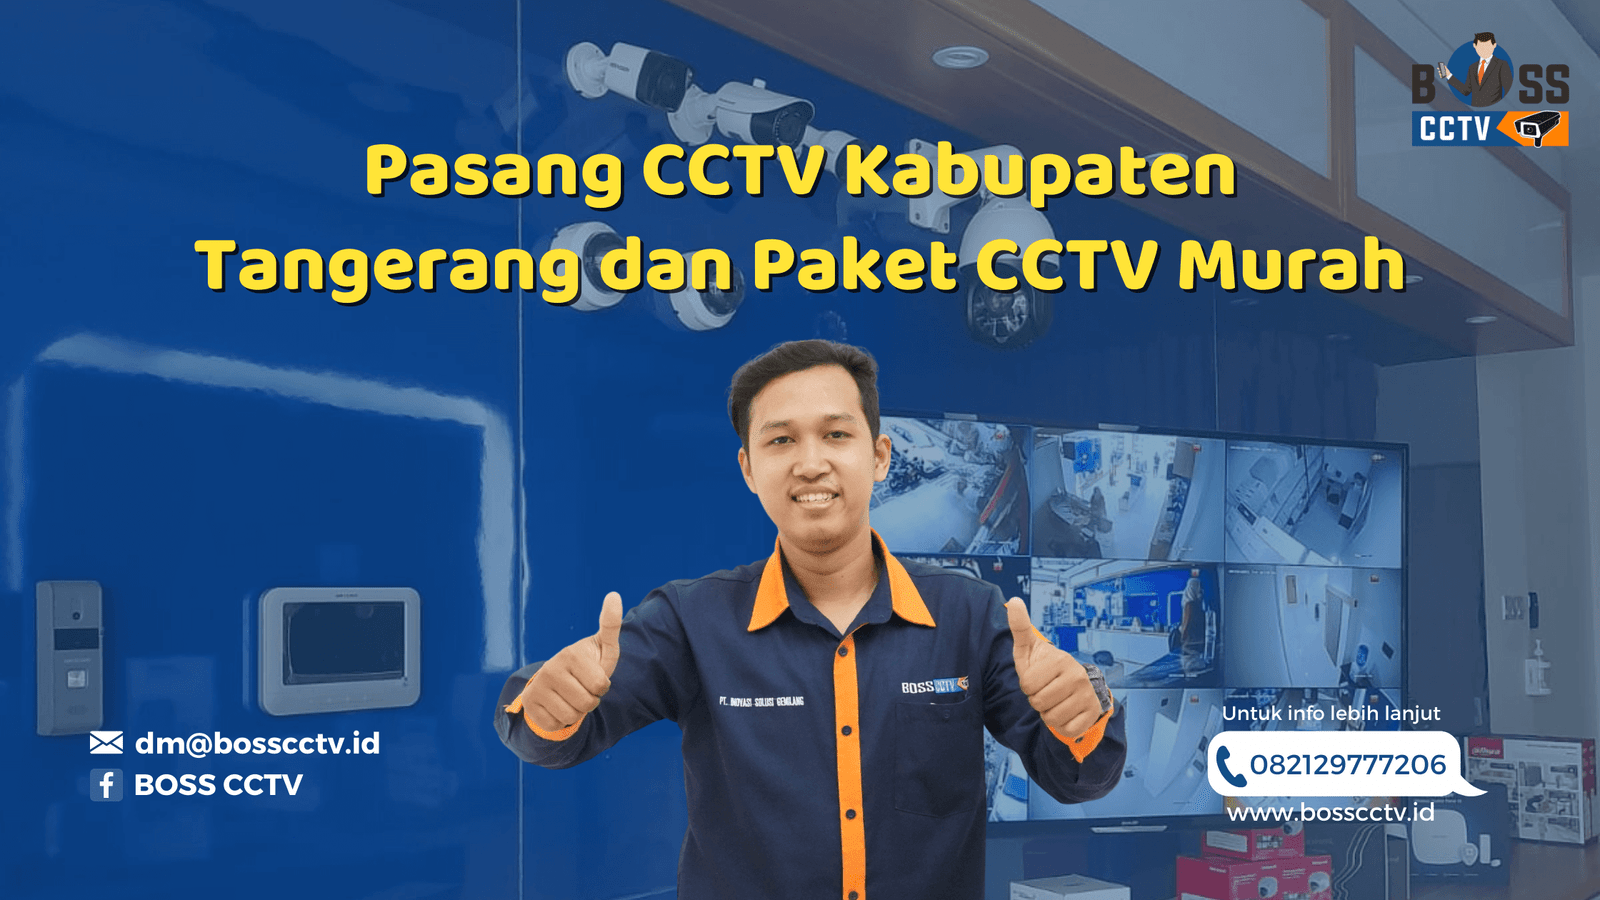 Pasang CCTV Kabupaten Tangerang dan Paket CCTV Murah